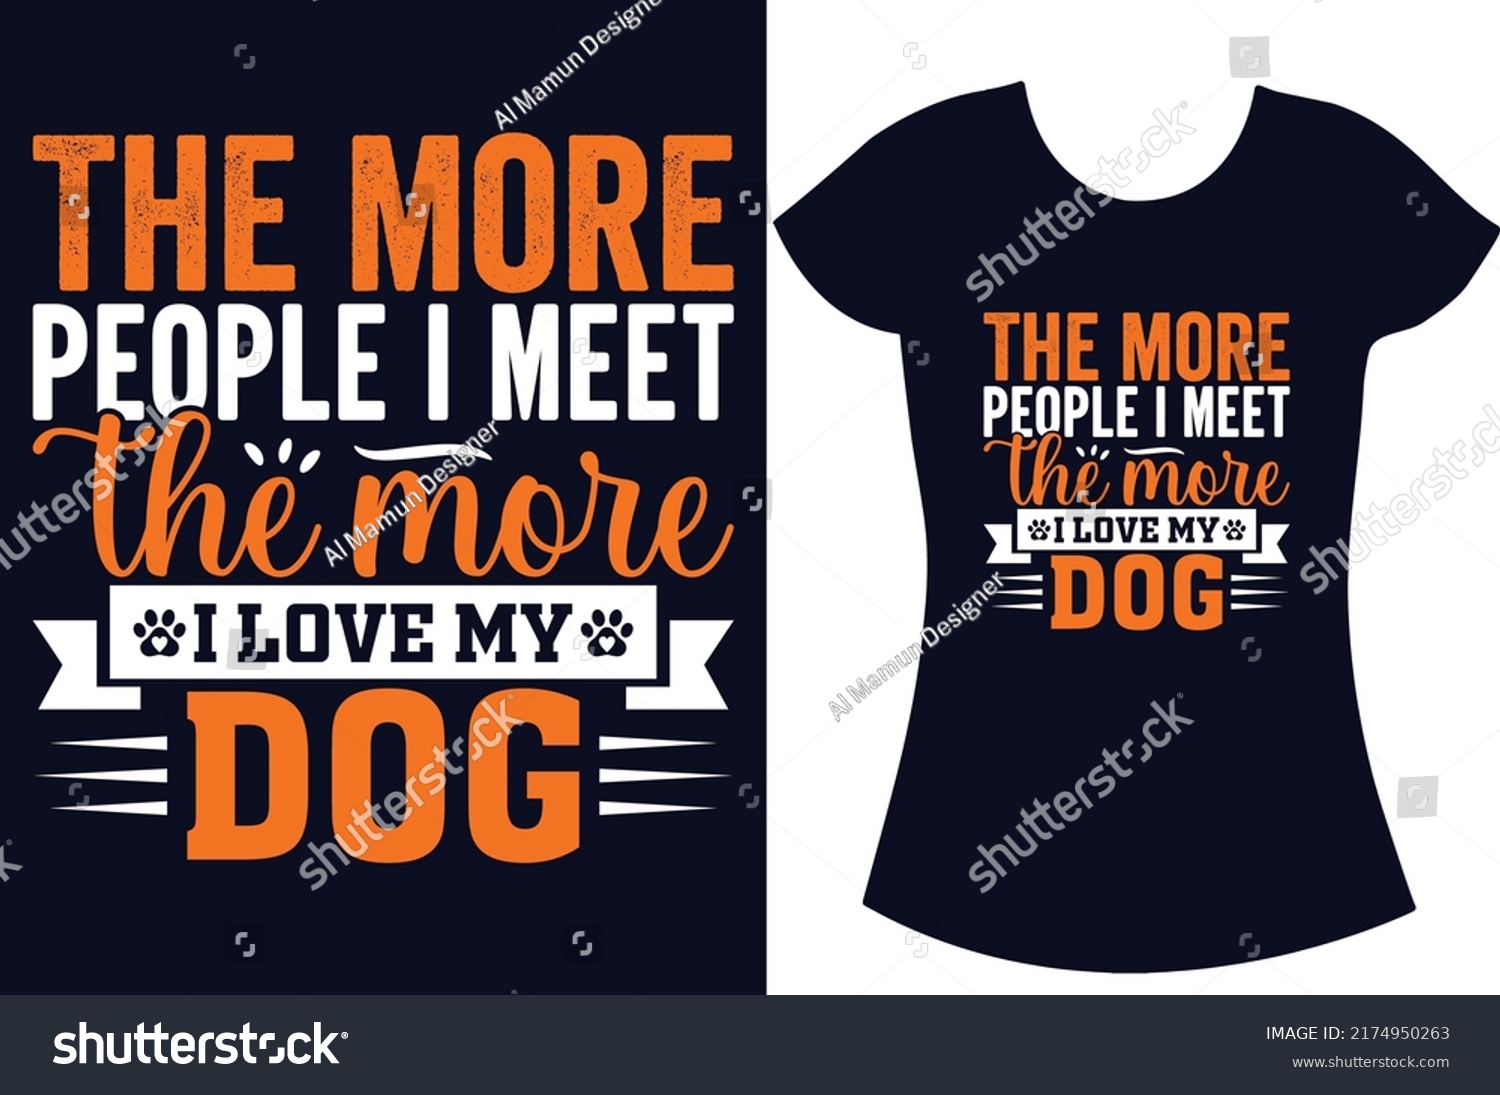 SVG of Dog typography svg t shirt design vector.
Dog funny t shirt design for the gift. Dog lover t shirt design.  svg